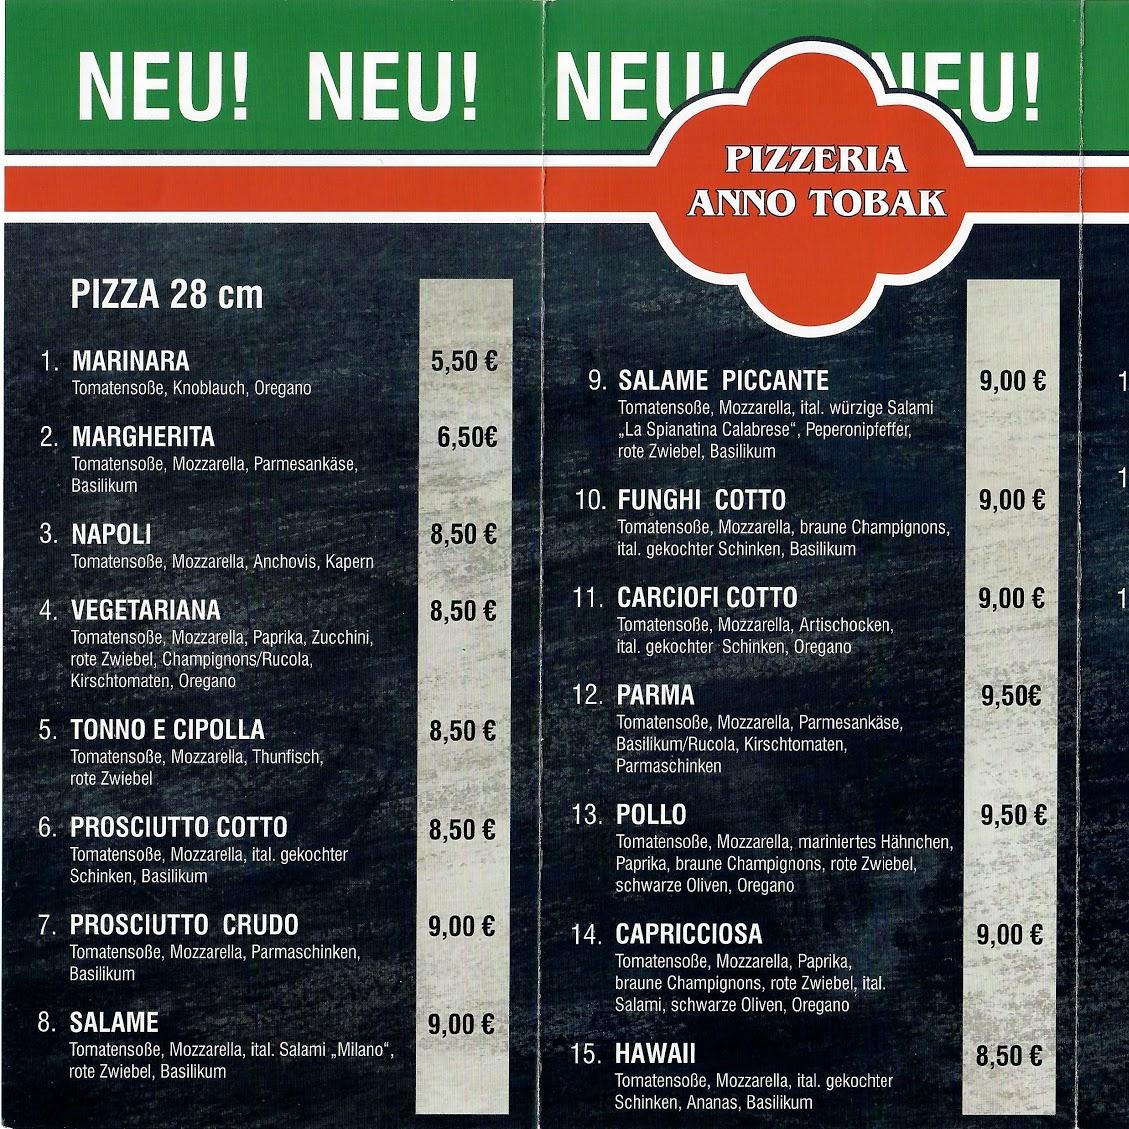 Restaurant "Pizzeria Anno Tobak" in Guben